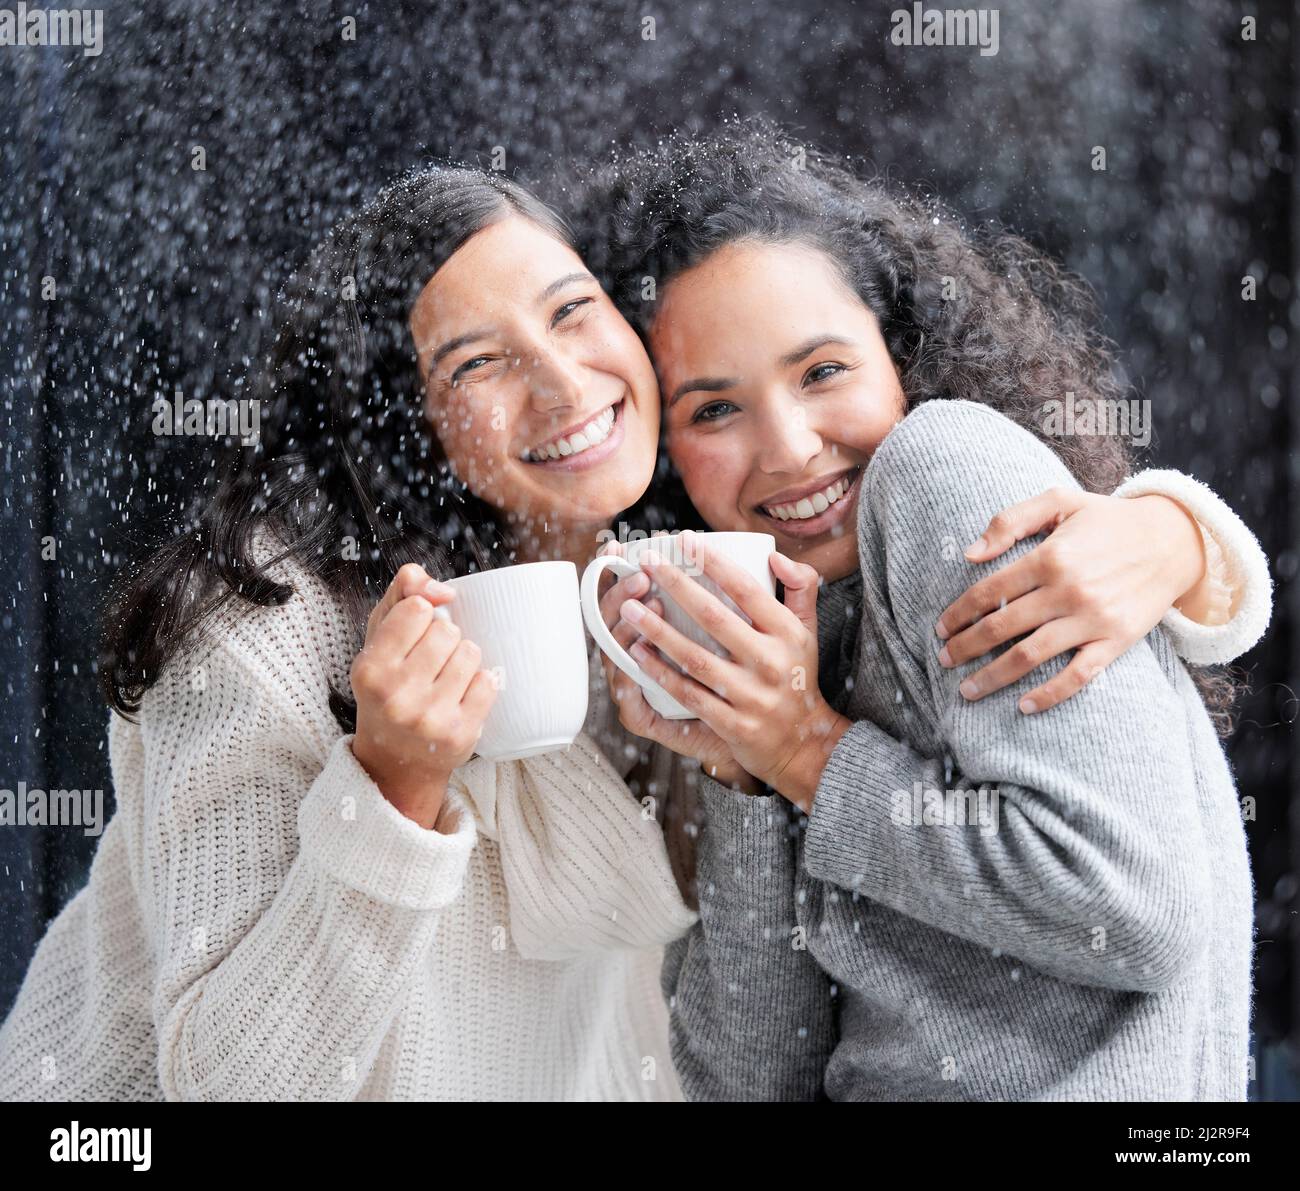 Wer kein Weihnachten im Herzen hat, wird es nie unter einem Baum finden. Aufnahme von zwei jungen Frauen, die draußen im Schnee Kaffee trinken. Stockfoto